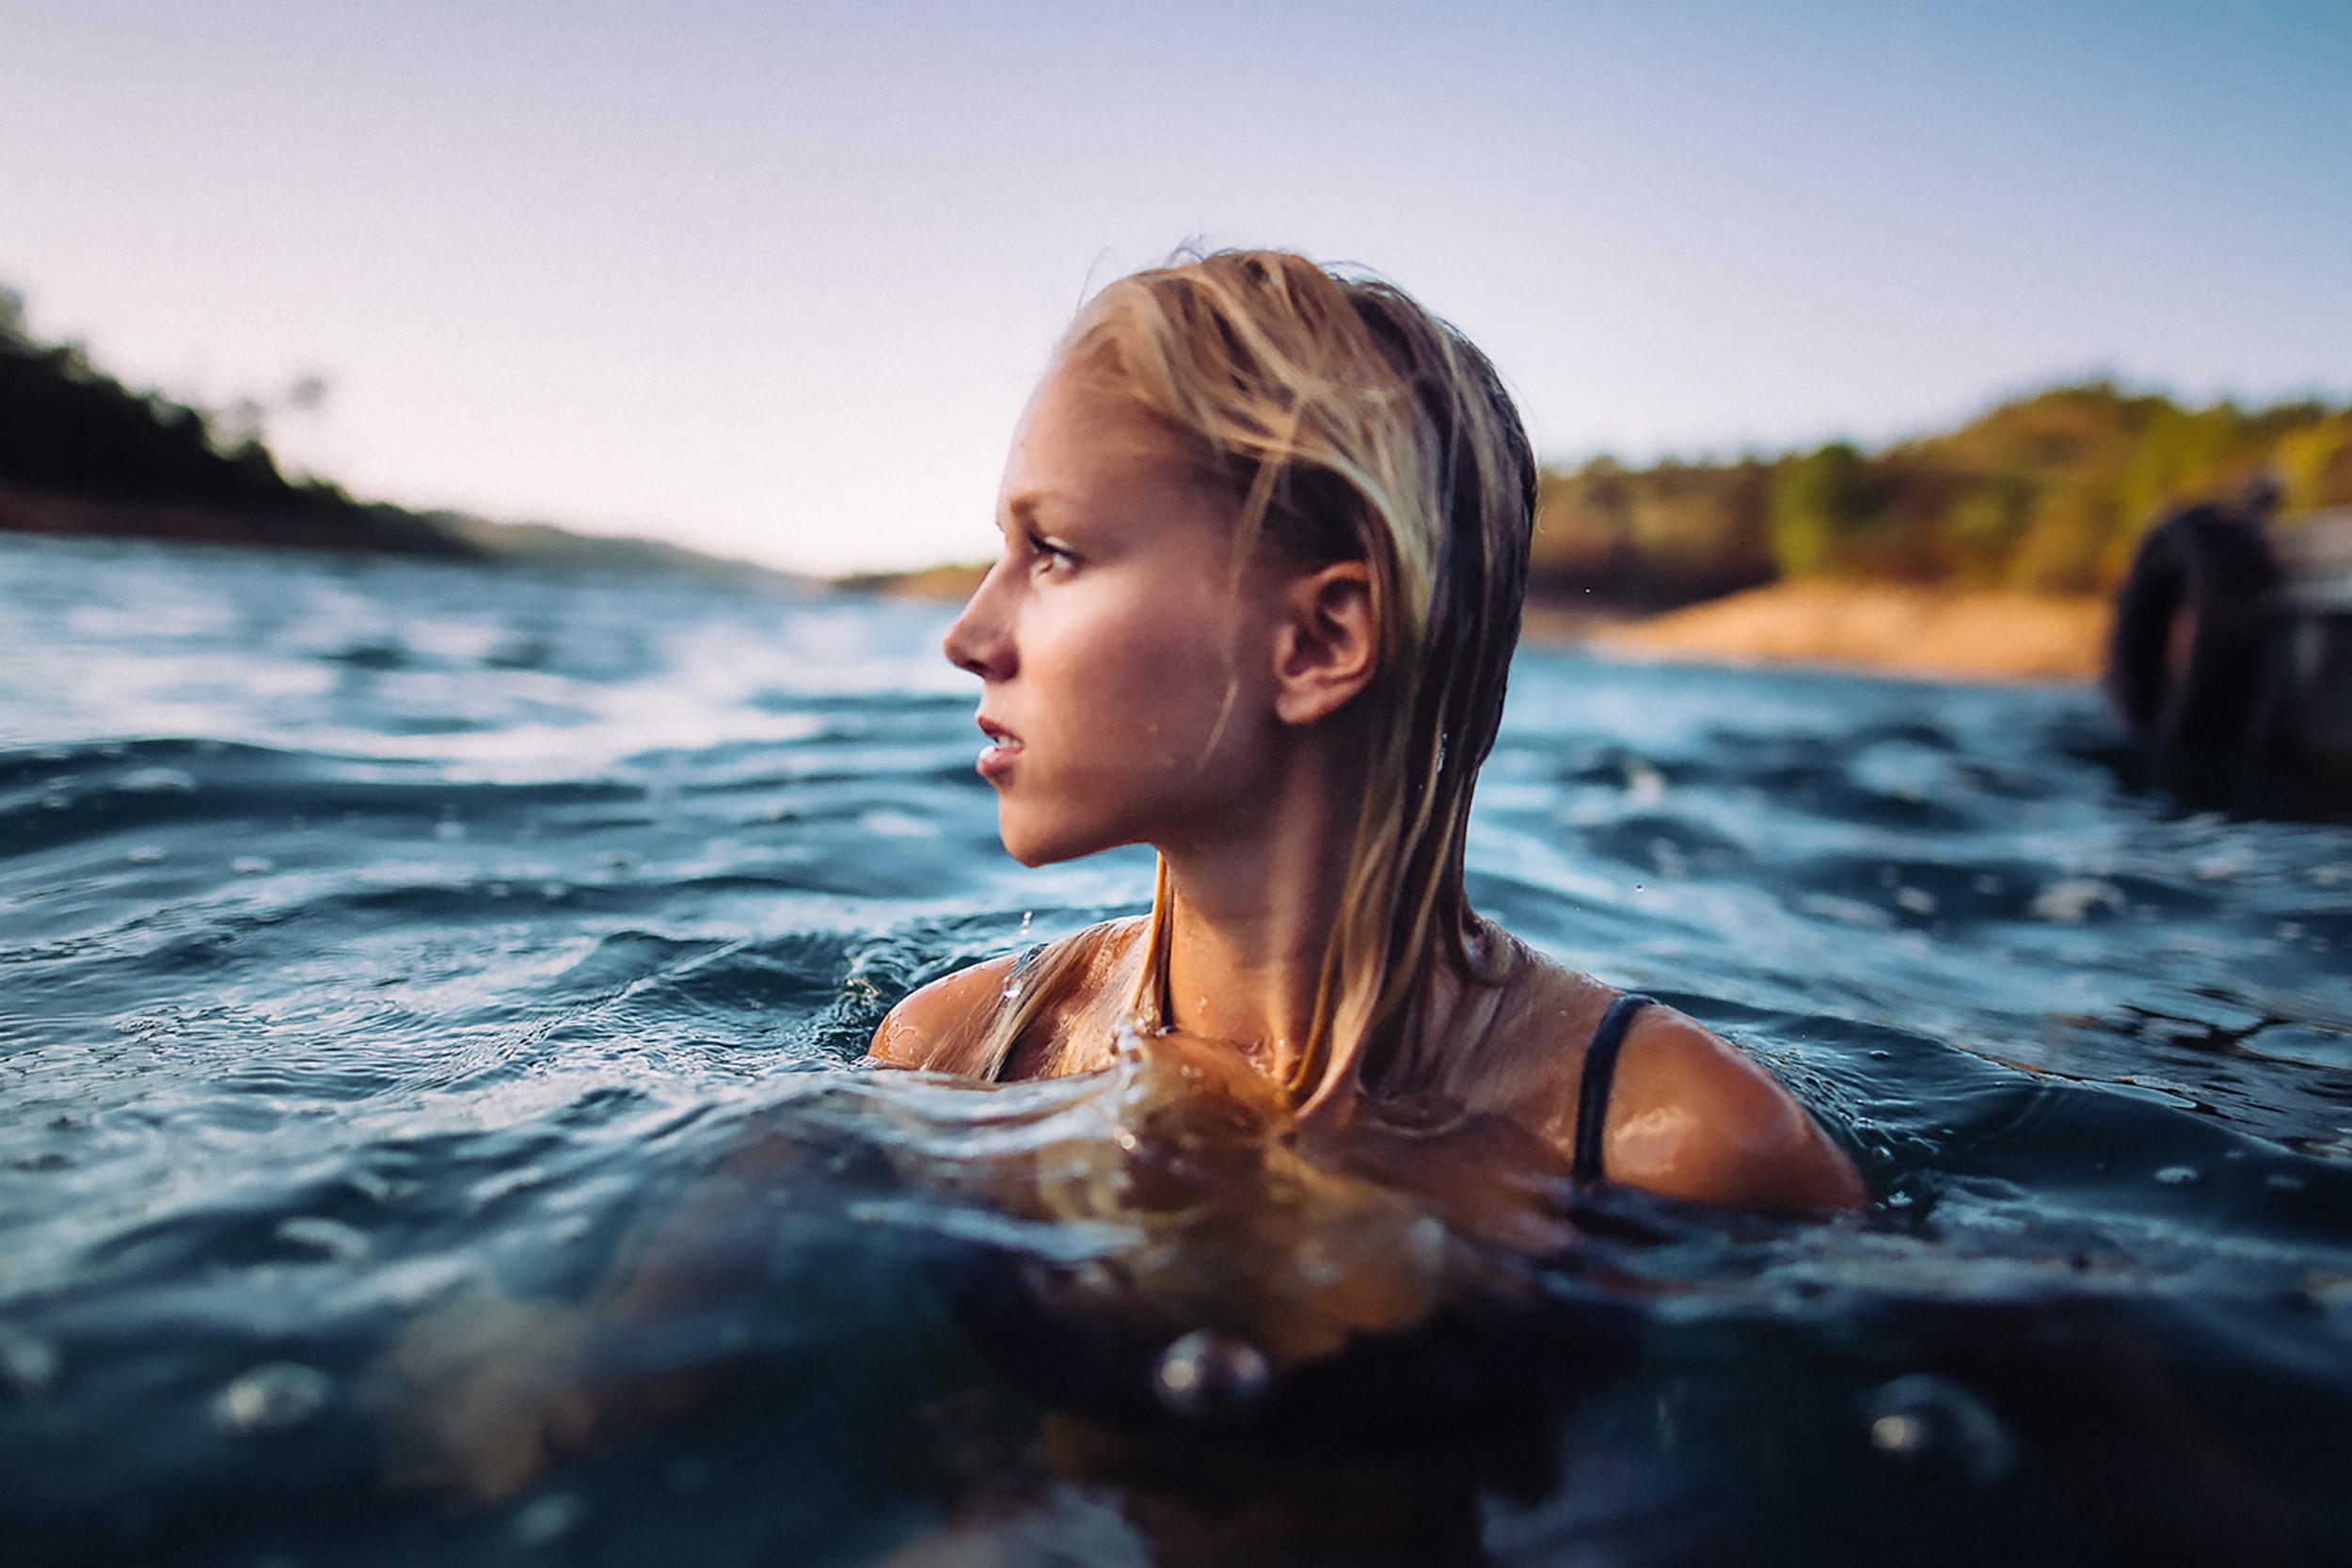 Women Model Andre Josselin Blonde Swimming Water Looking Away Women Outdoors 2500x1667